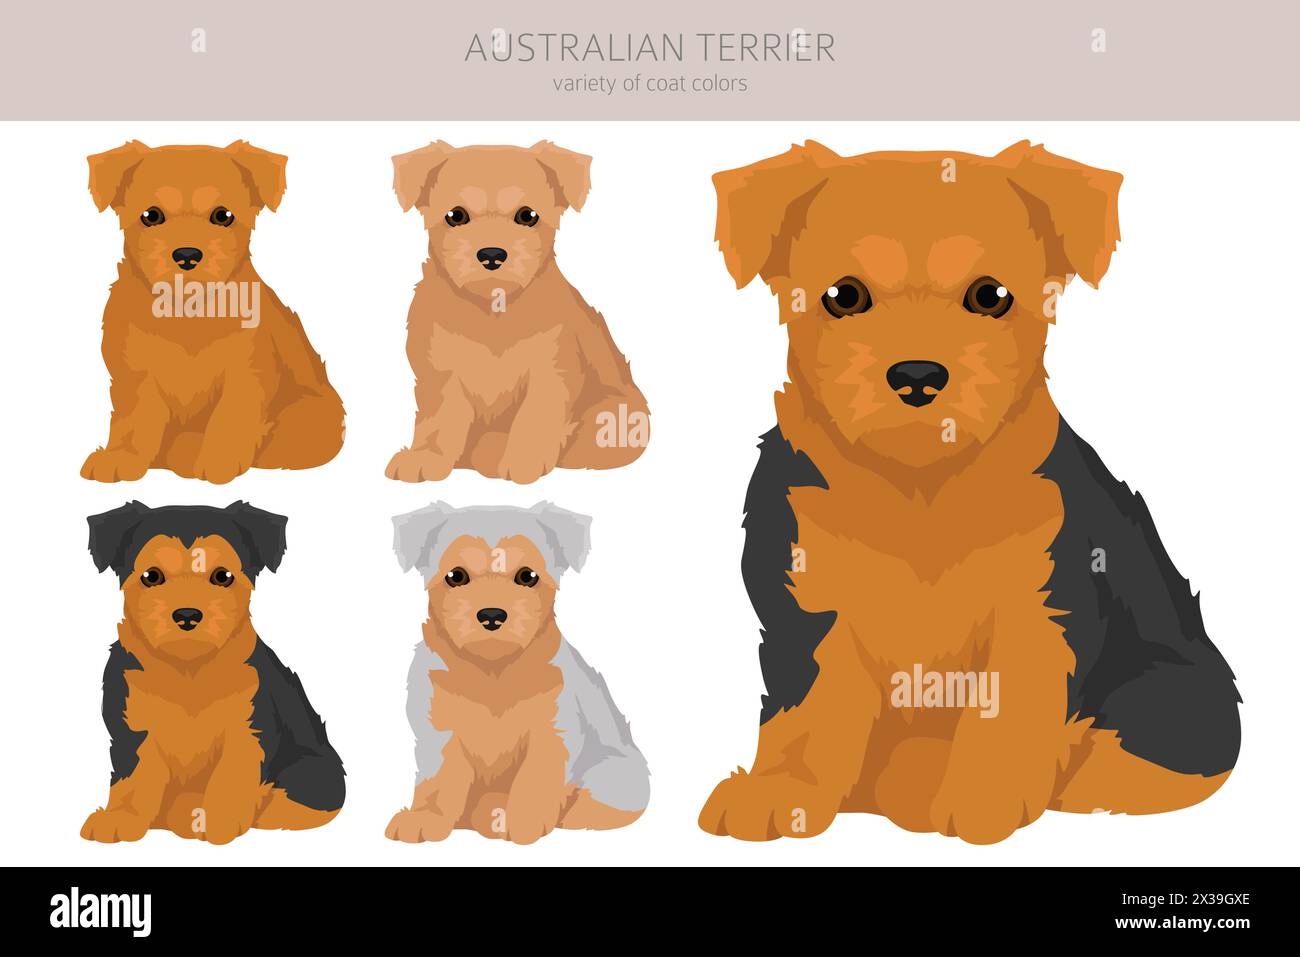 Cucciolo australiano terrier, clipart di tutti i colori. Diversi colori di rivestimento e pose. Illustrazione vettoriale Illustrazione Vettoriale